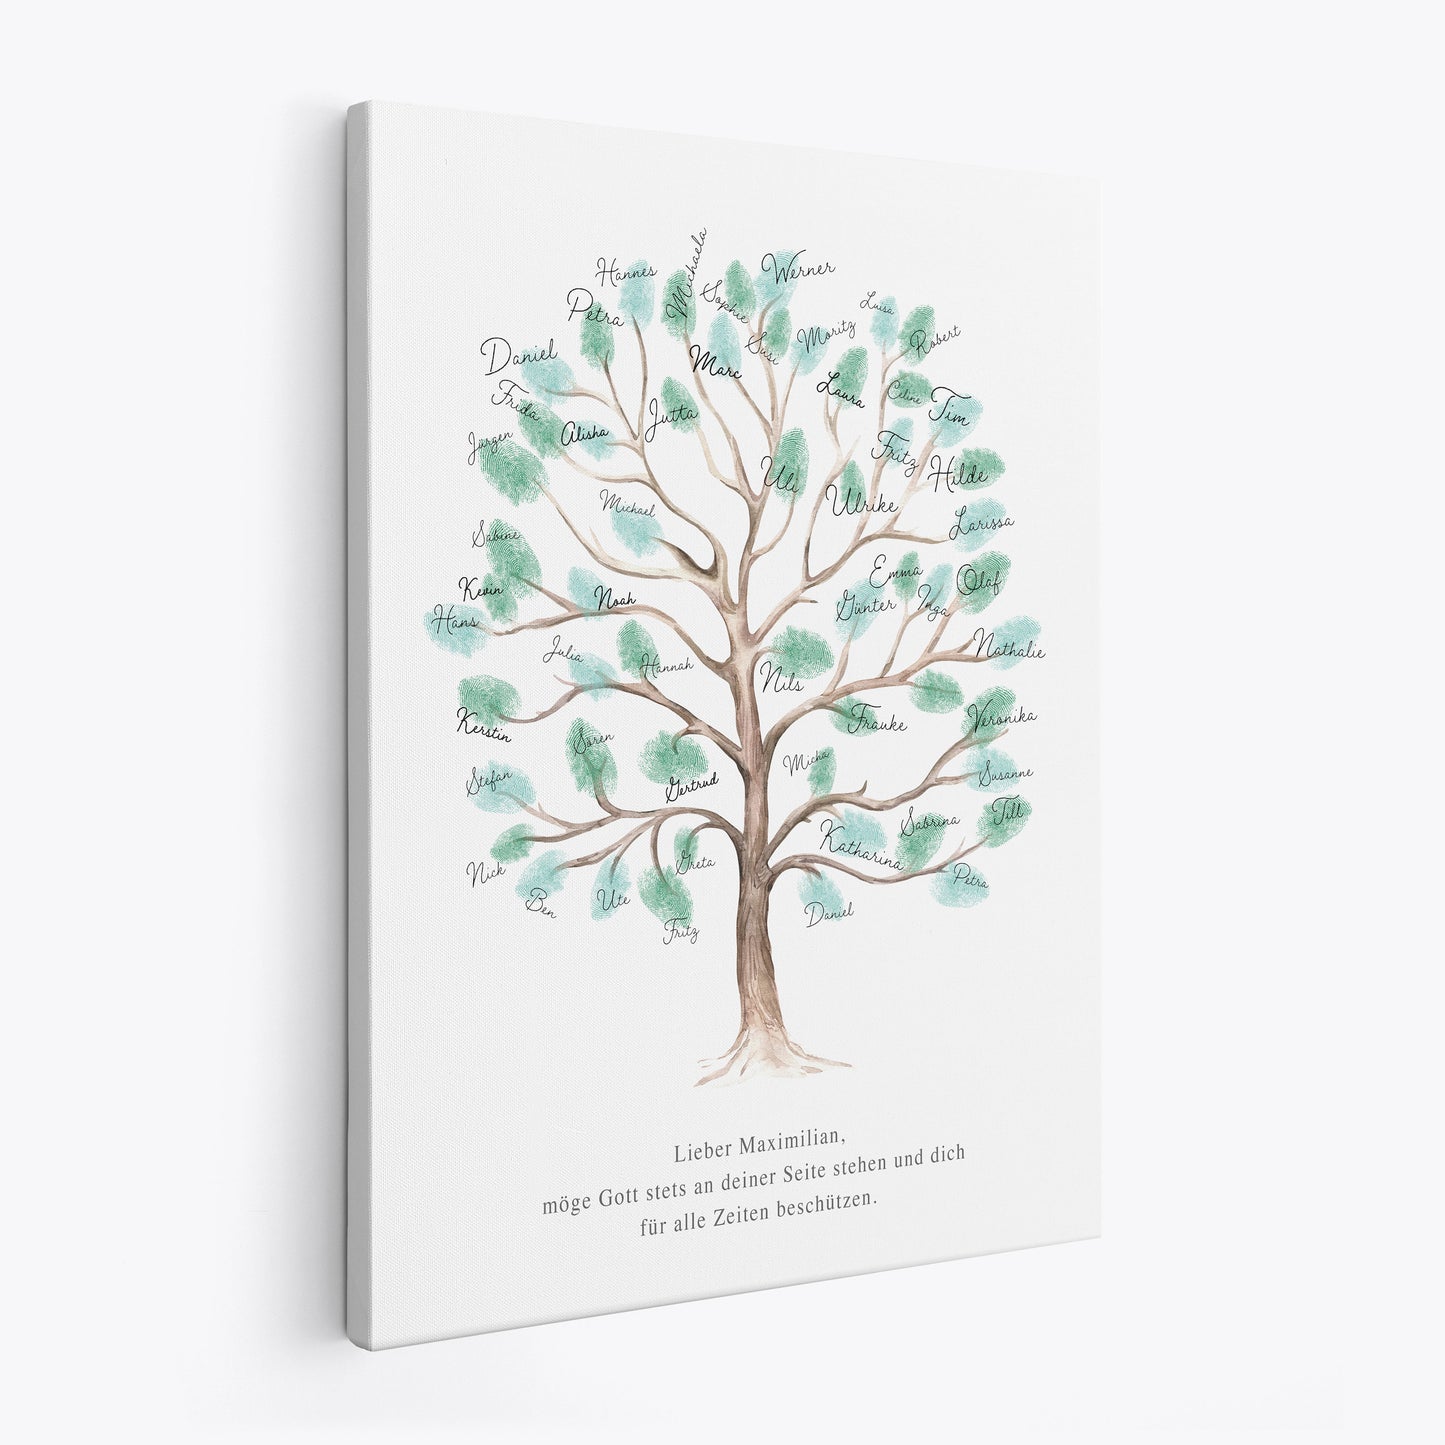 Fingerabdruck Kommunion Gästebuch Konfirmation Geschenk personalisiert Baum 30x40 cm (OHNE Farbe)